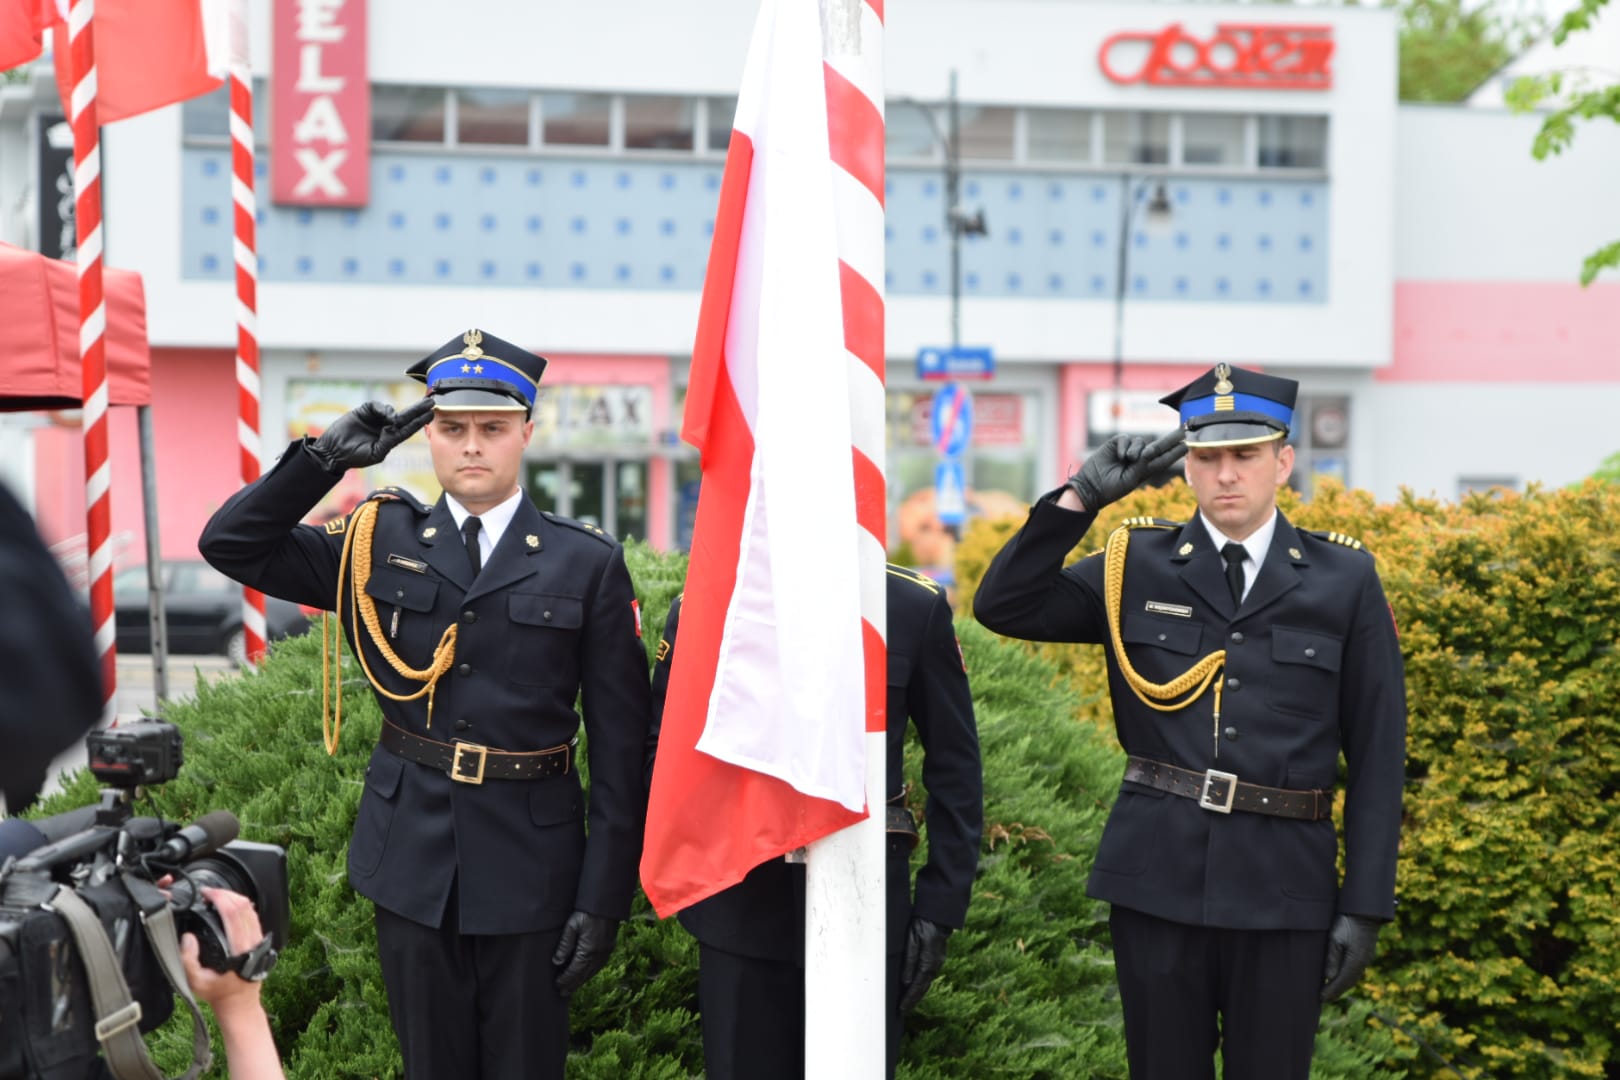 Dwóch strażaków salutuje przy maszcie na którym widnieje flaga RP